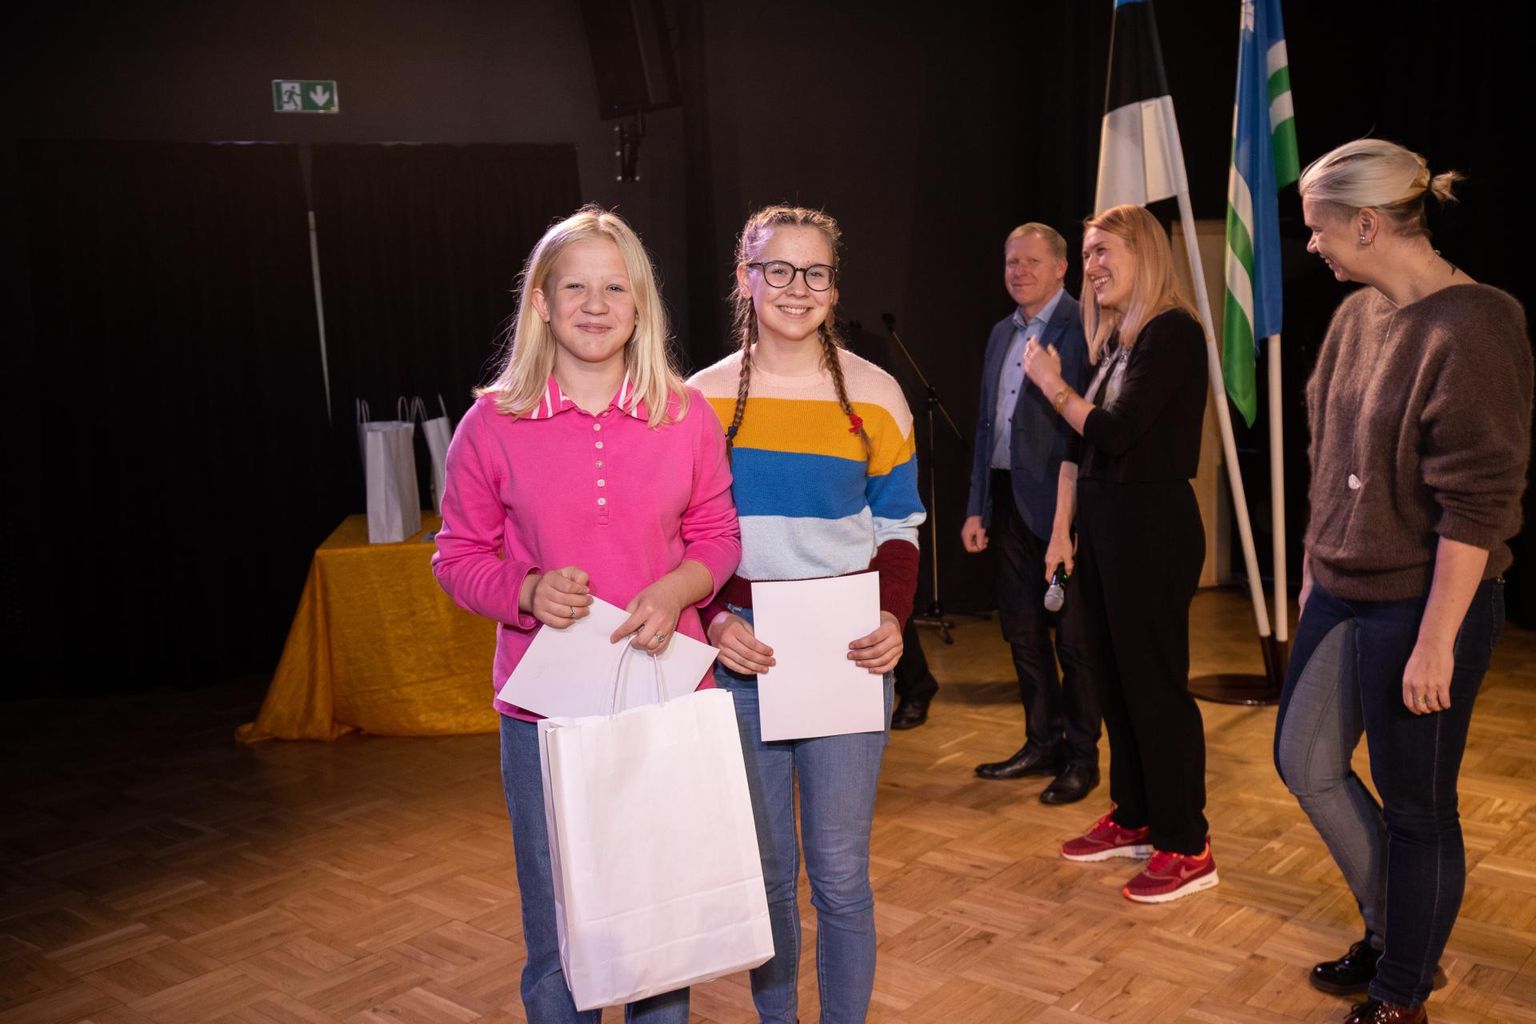 Festivali grand prix&#39; võitis Anni-Marleen Saare ja Miina Matilda Ristheina film "Ära reosta loodust".